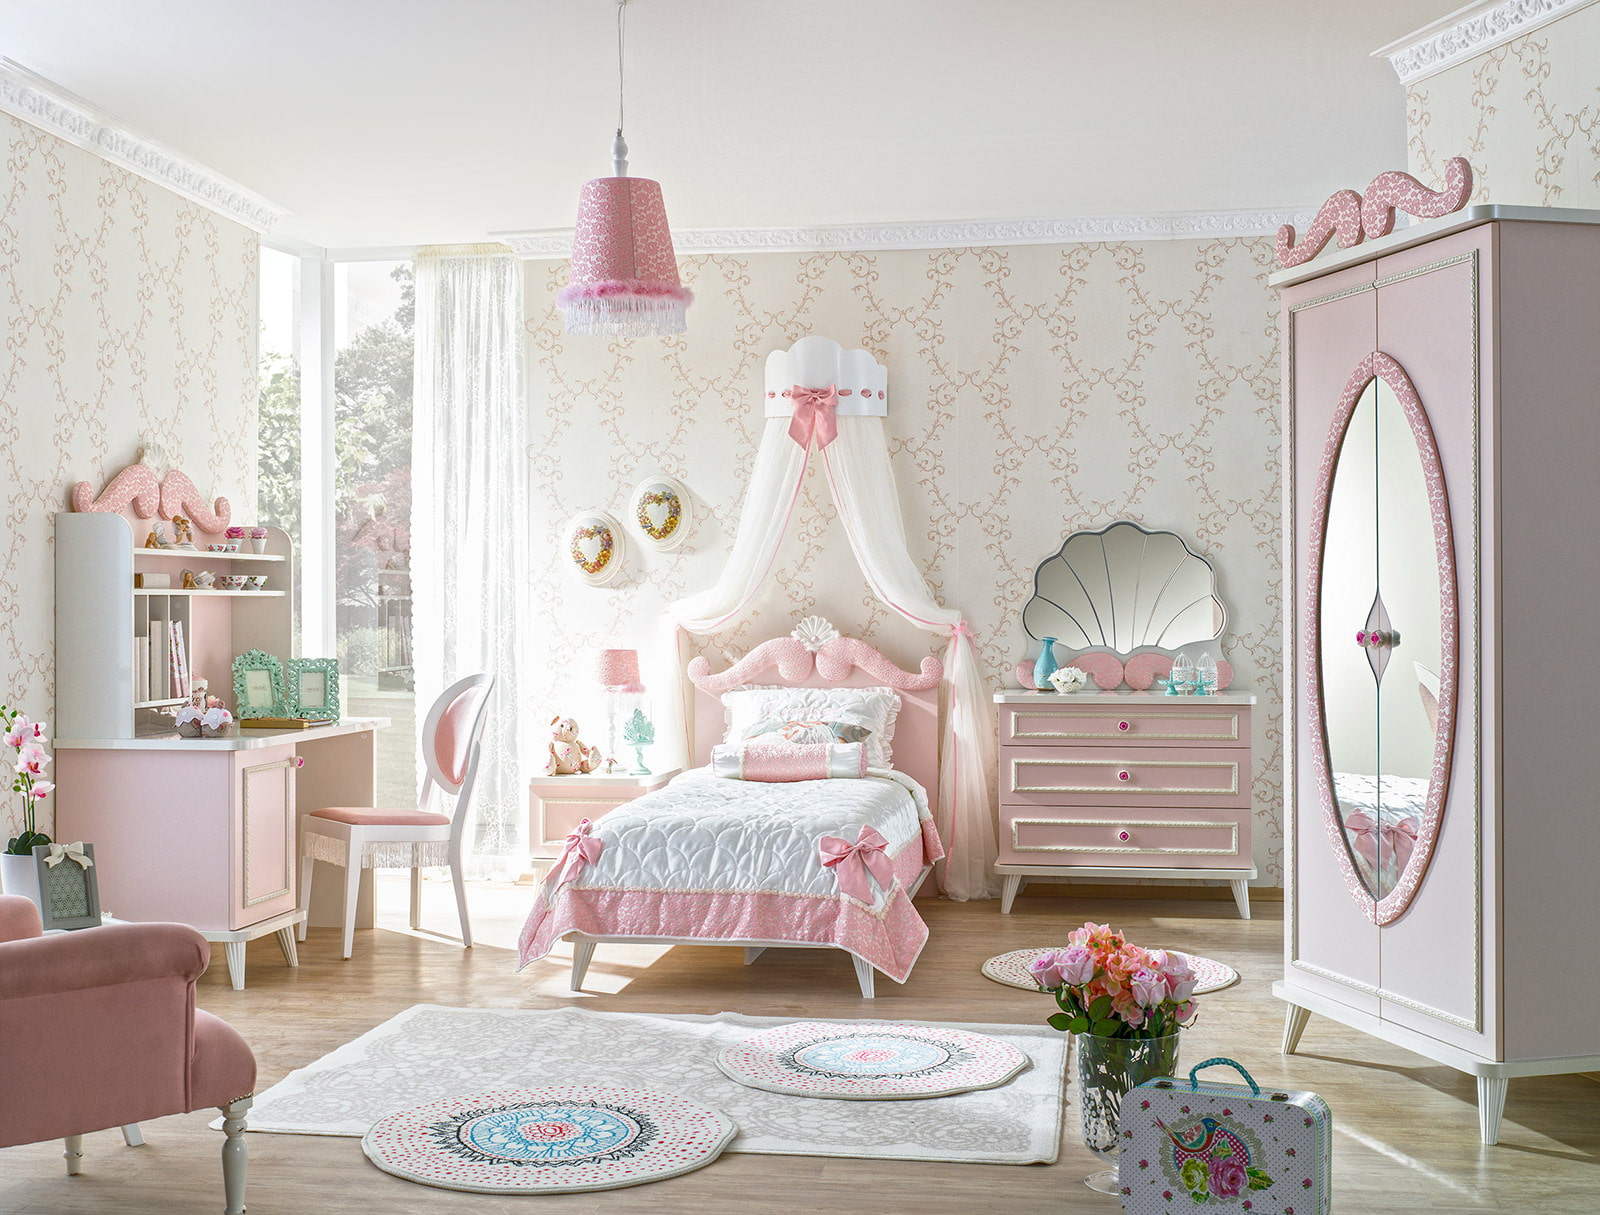 Children's room in pink